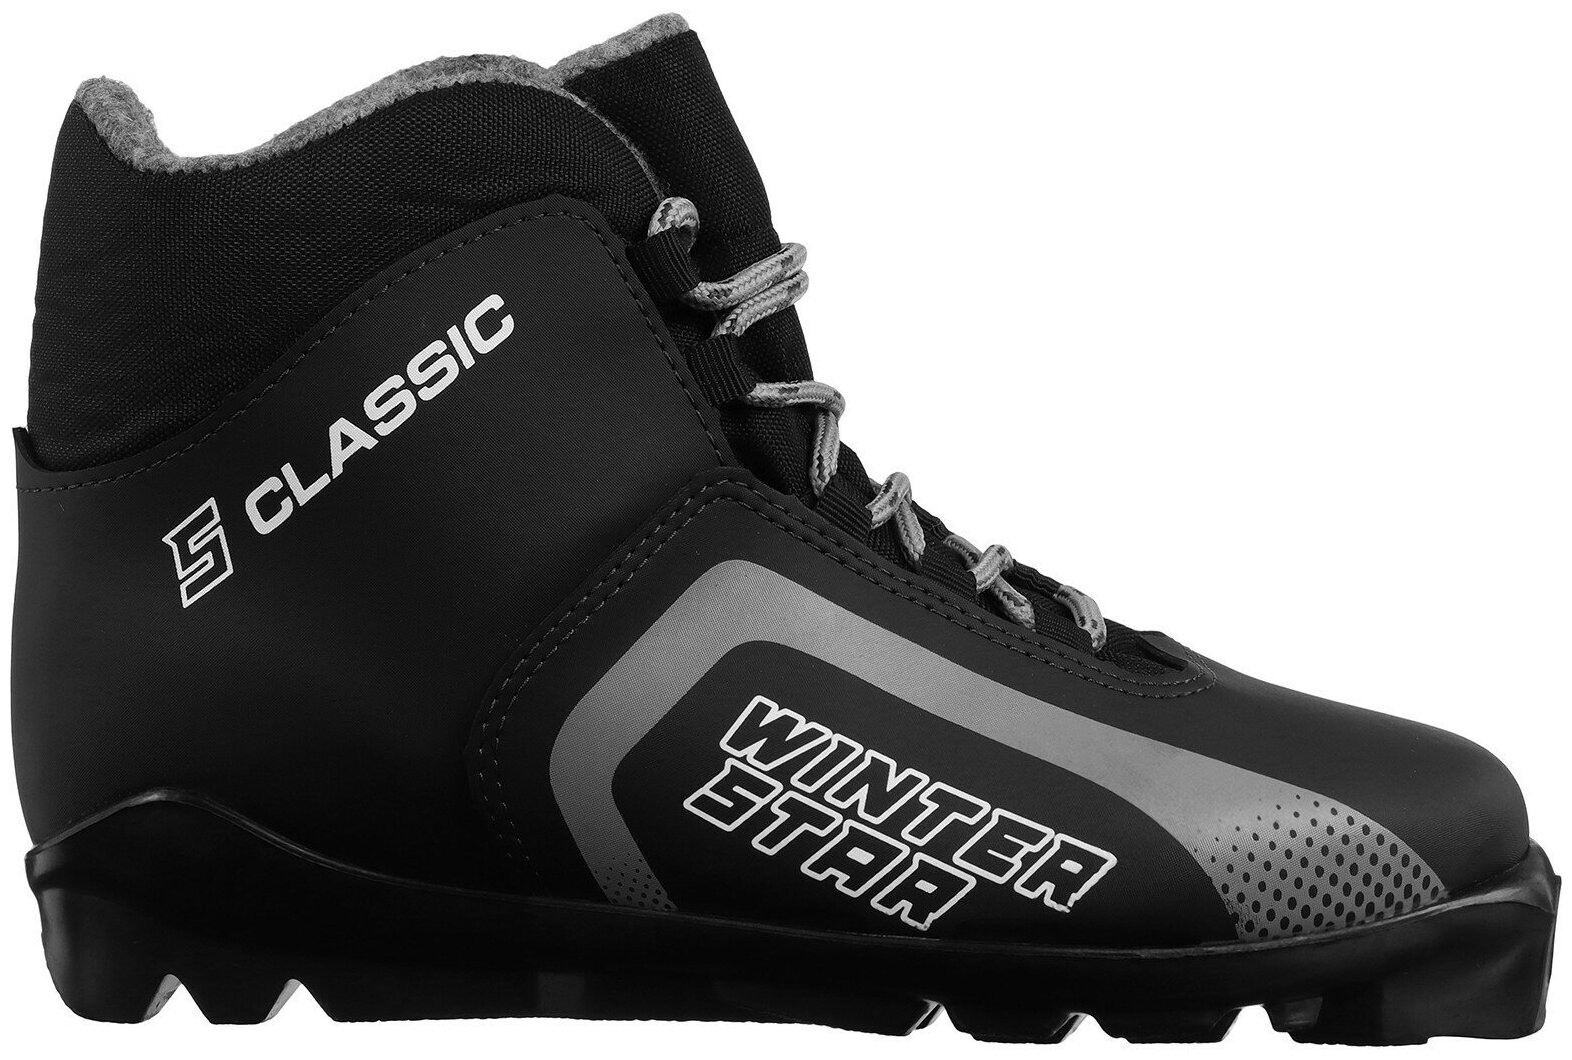 Ботинки лыжные Winter Star "Сlassic", SNS, искусственная кожа, размер 39, цвет чёрный, серый